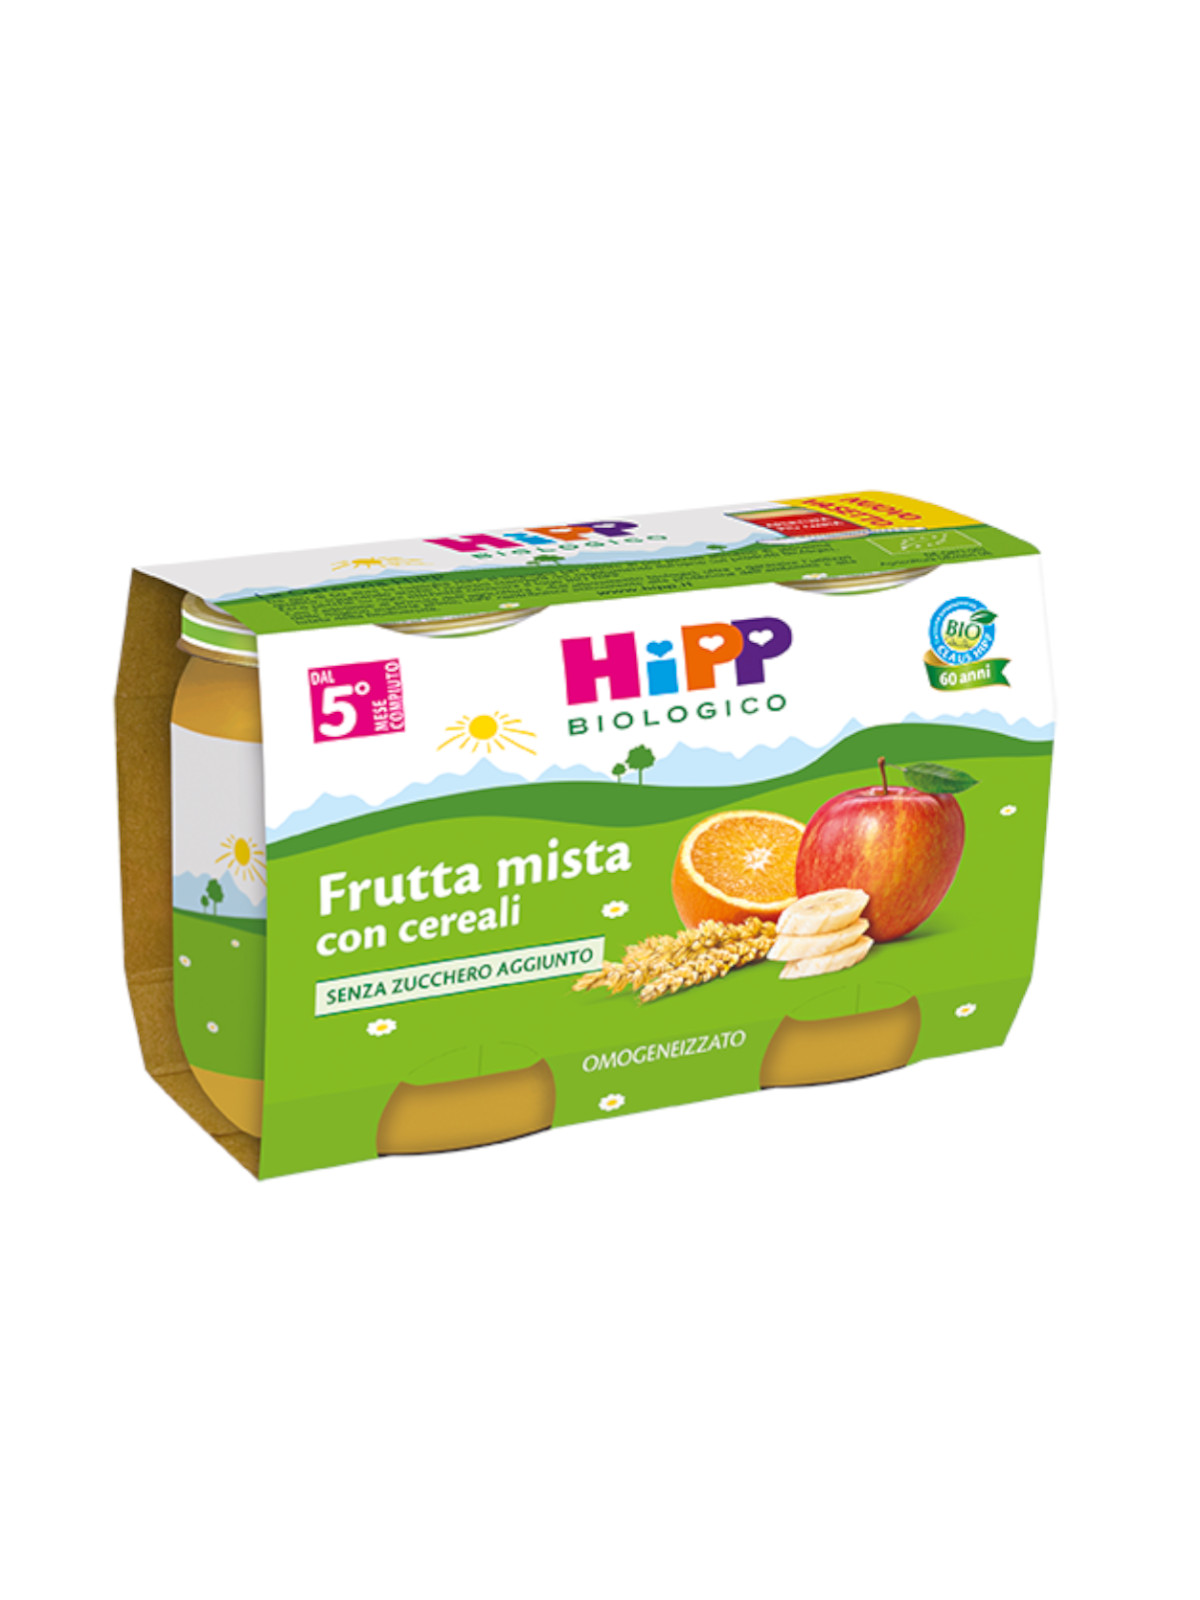 Hipp - omogeneizzato frutta mista con cereali 2x125g - Hipp